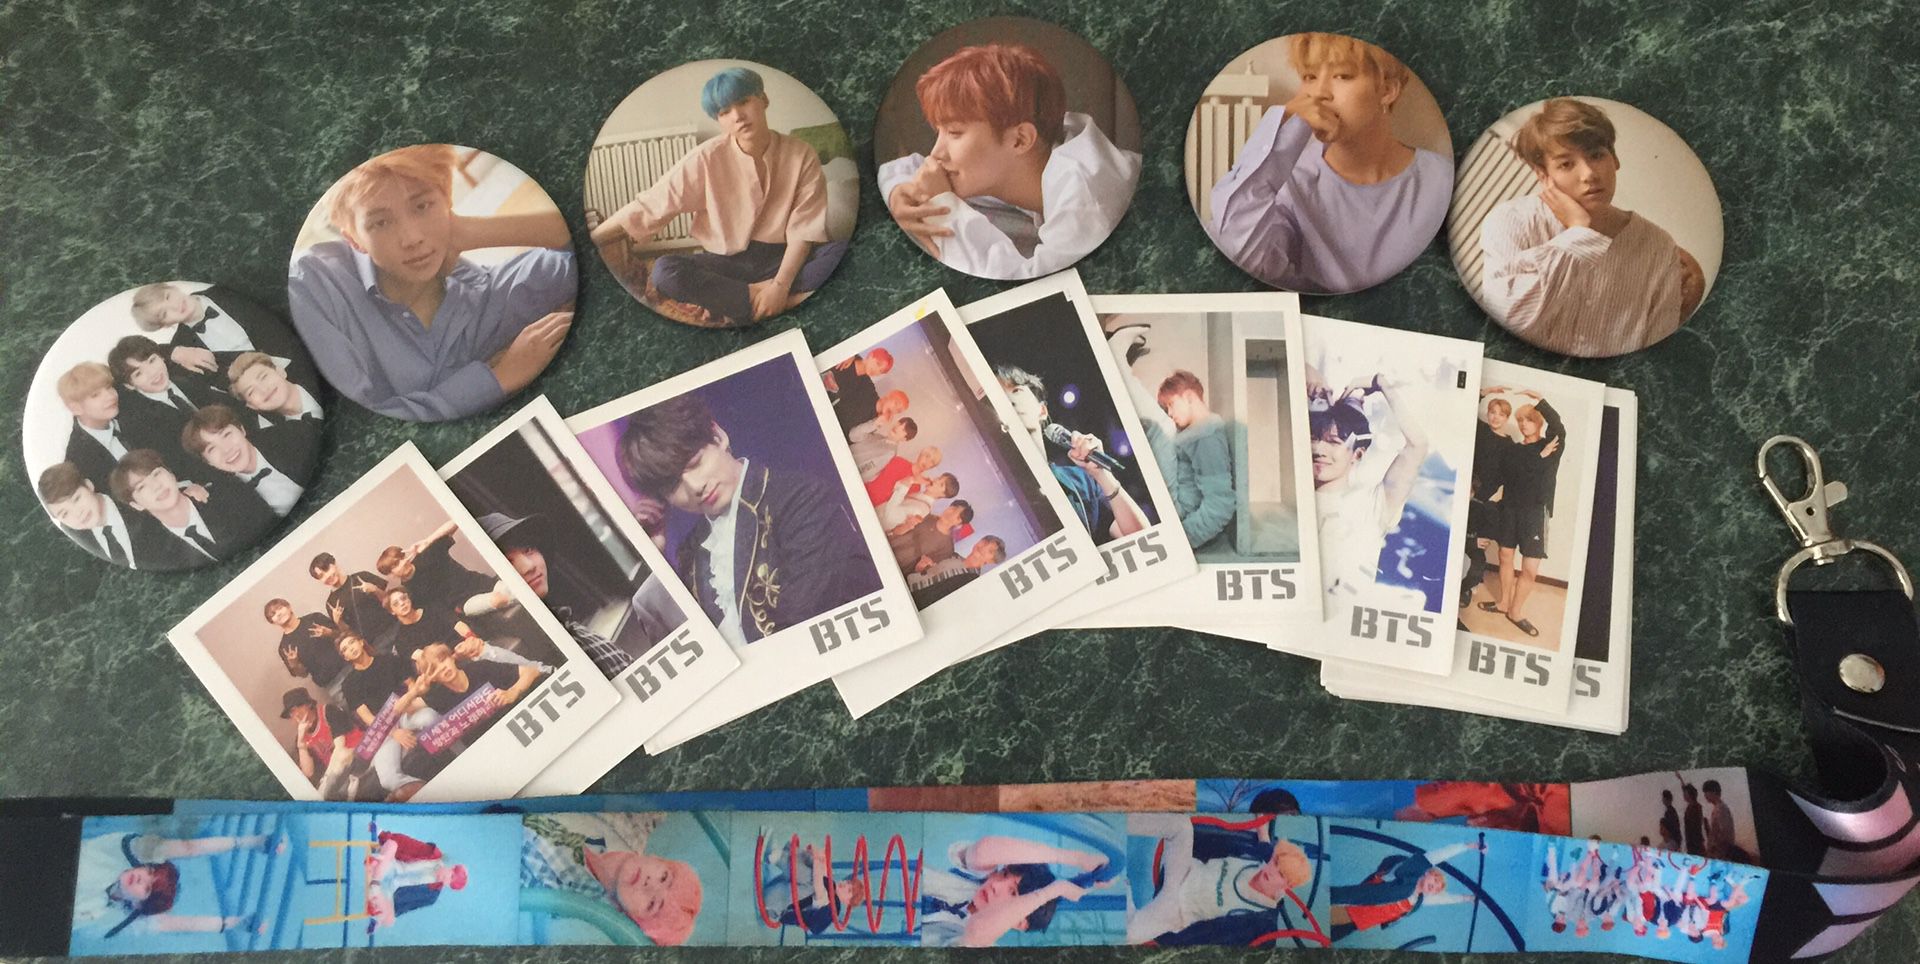 BTS photocards (22), pins, and lanyard